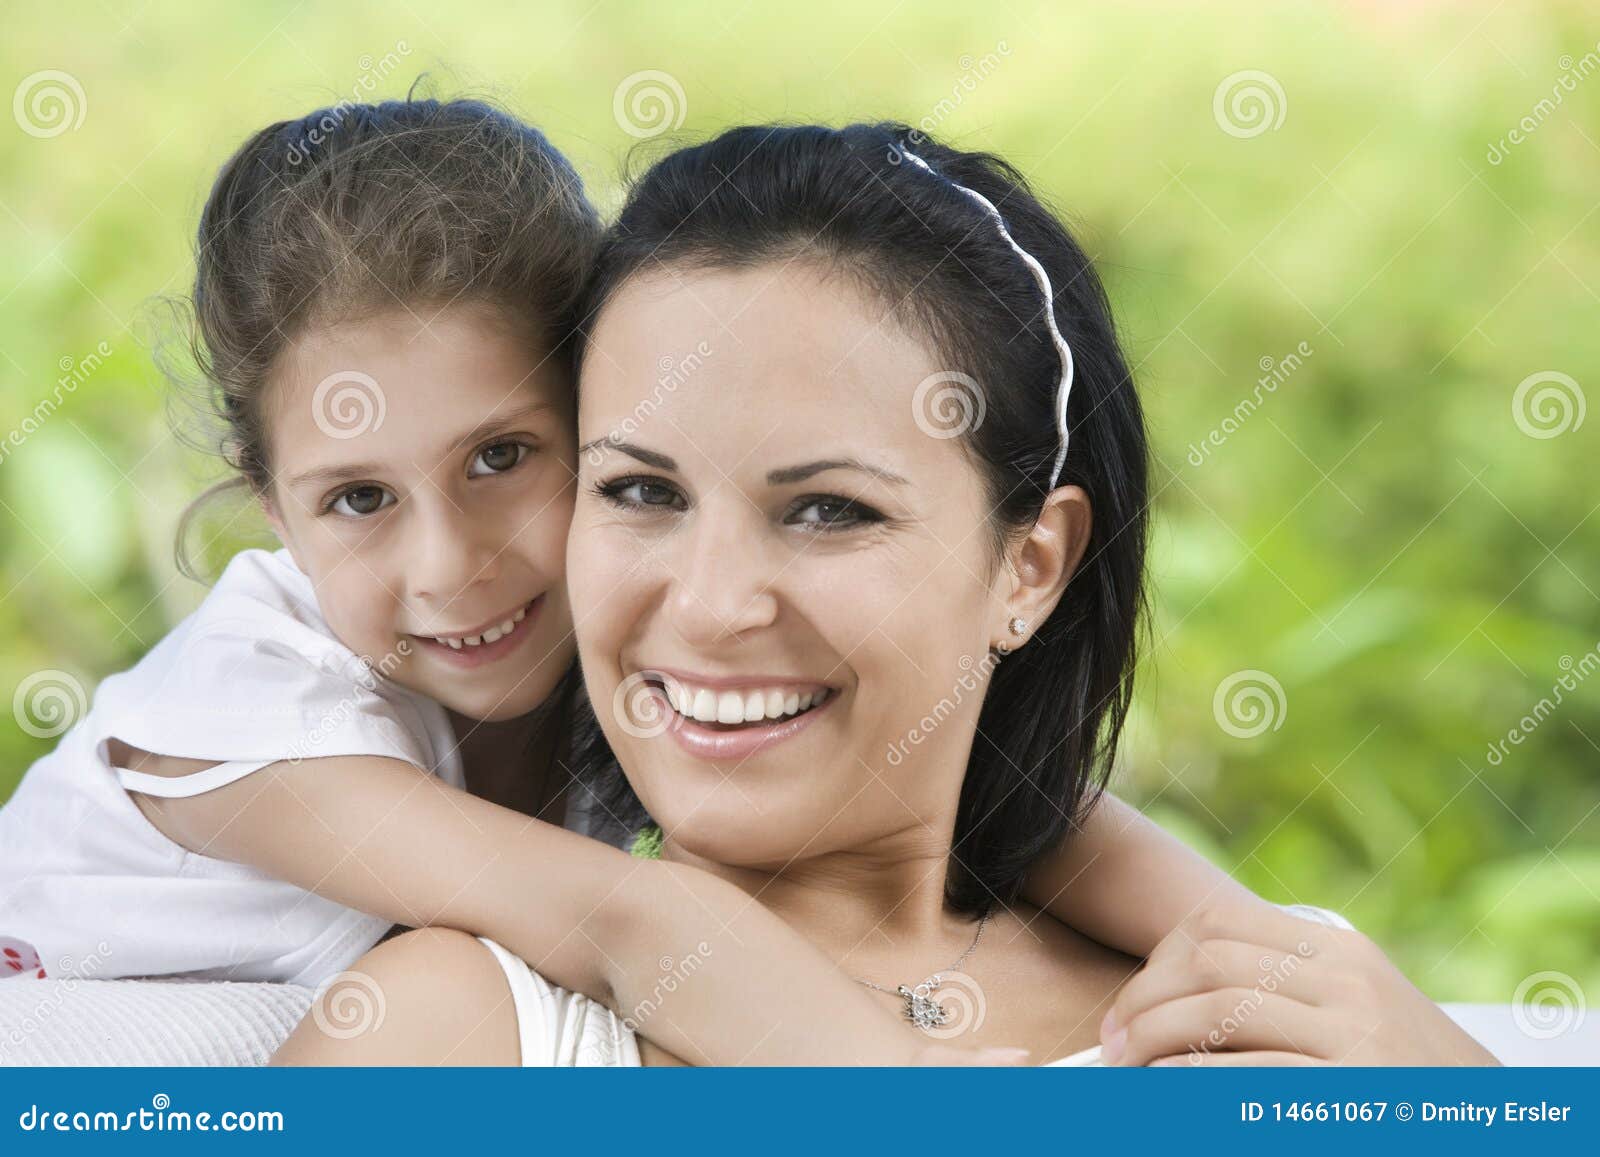 Mit Mutter. Portrait der glücklichen Mutter mit der Tochter, die gute Zeit in der Sommerumgebung hat